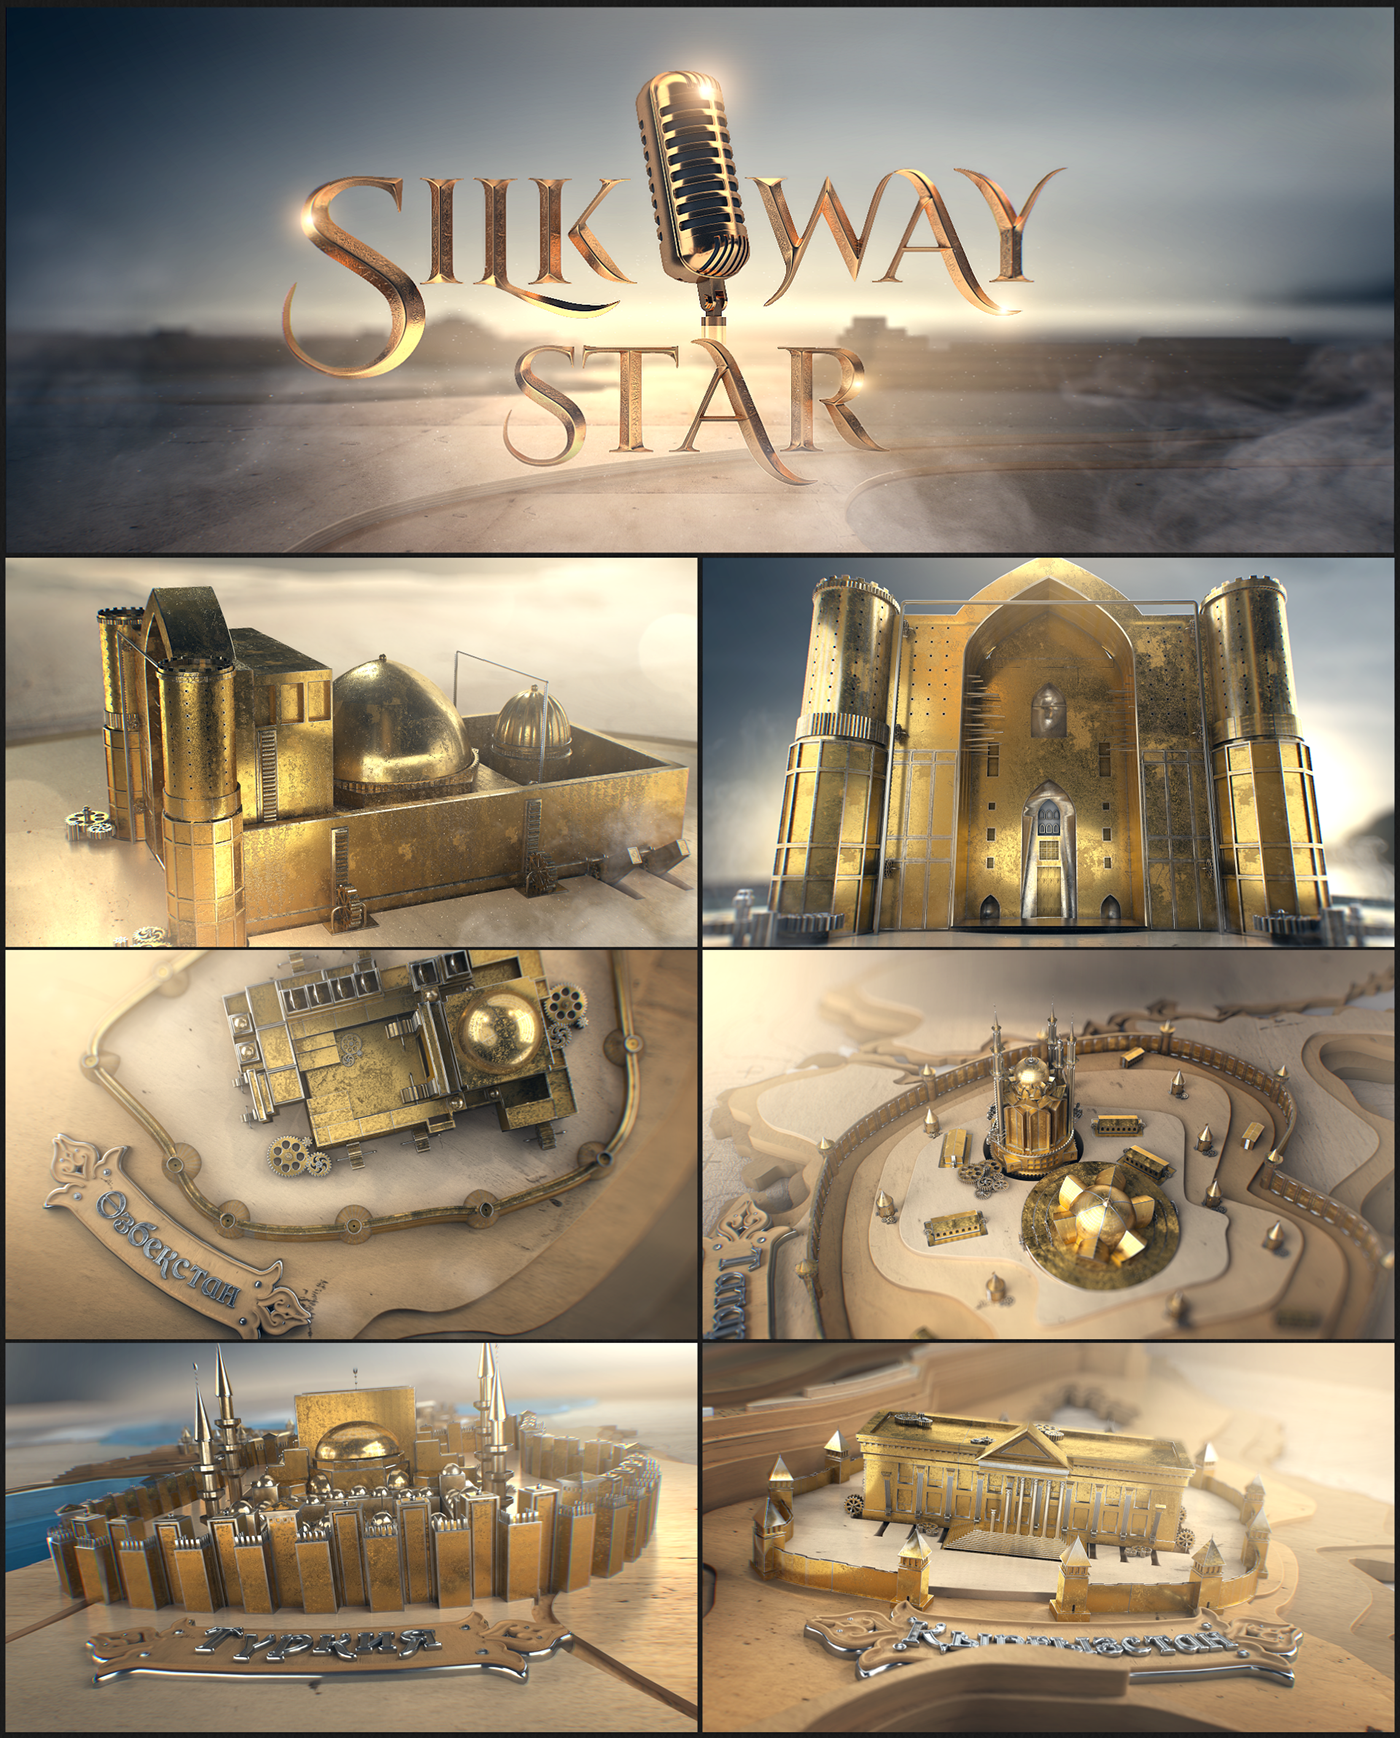 gold got SILK way star Show tv broadcast octane map